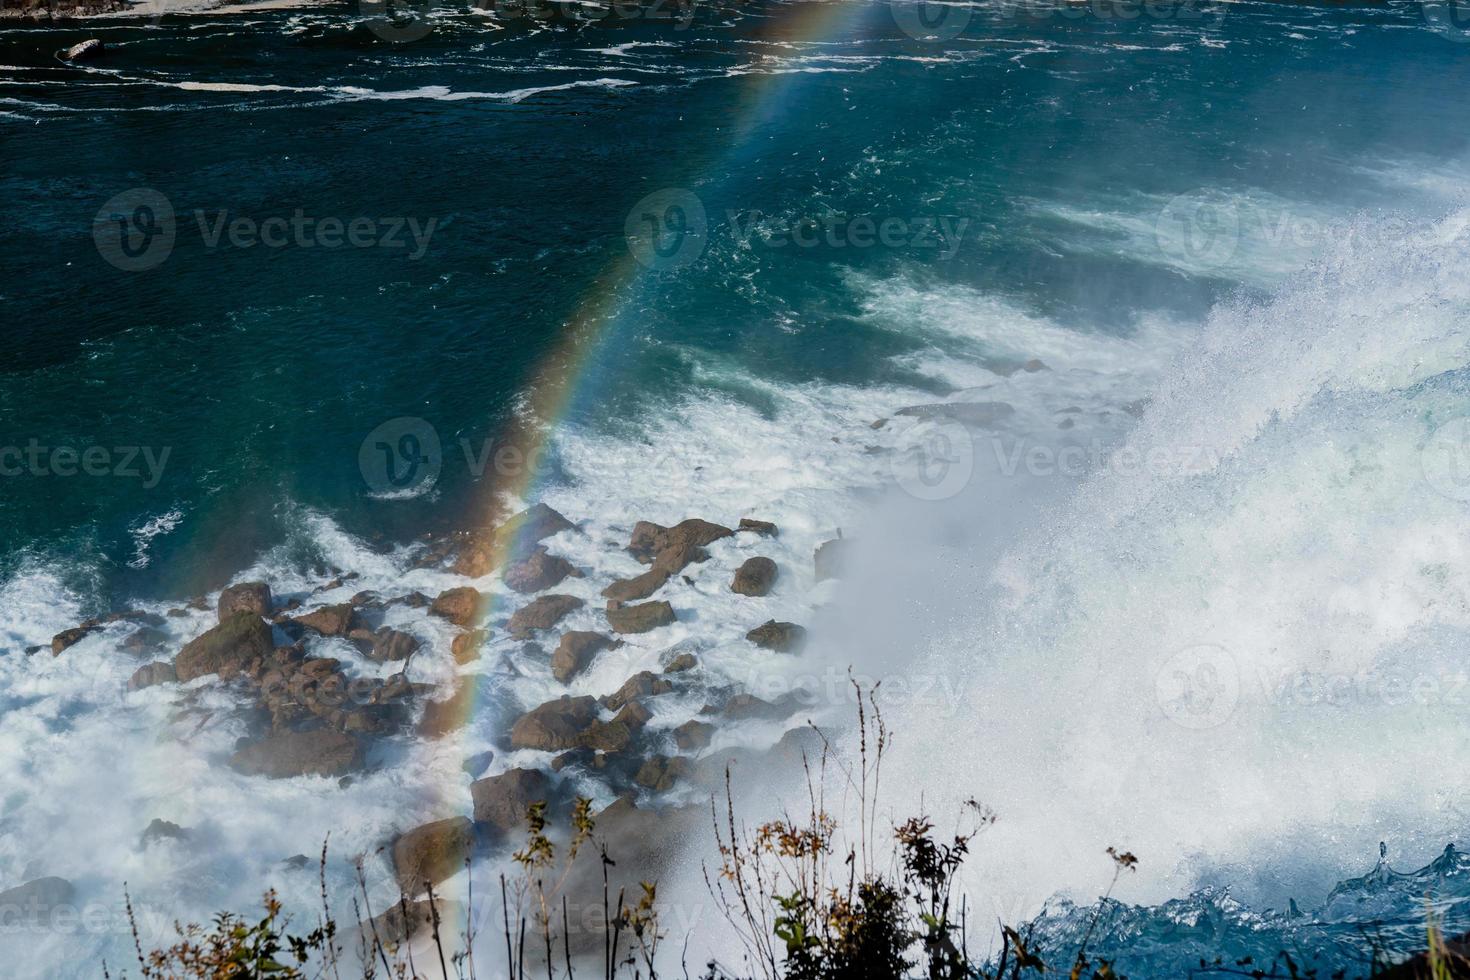 niagara falls från de amerikan och kanadensisk sidor. regnbåge över de vattenfall. de mest populär turist plats. stormig flod den där flöden in i de sjö. foto